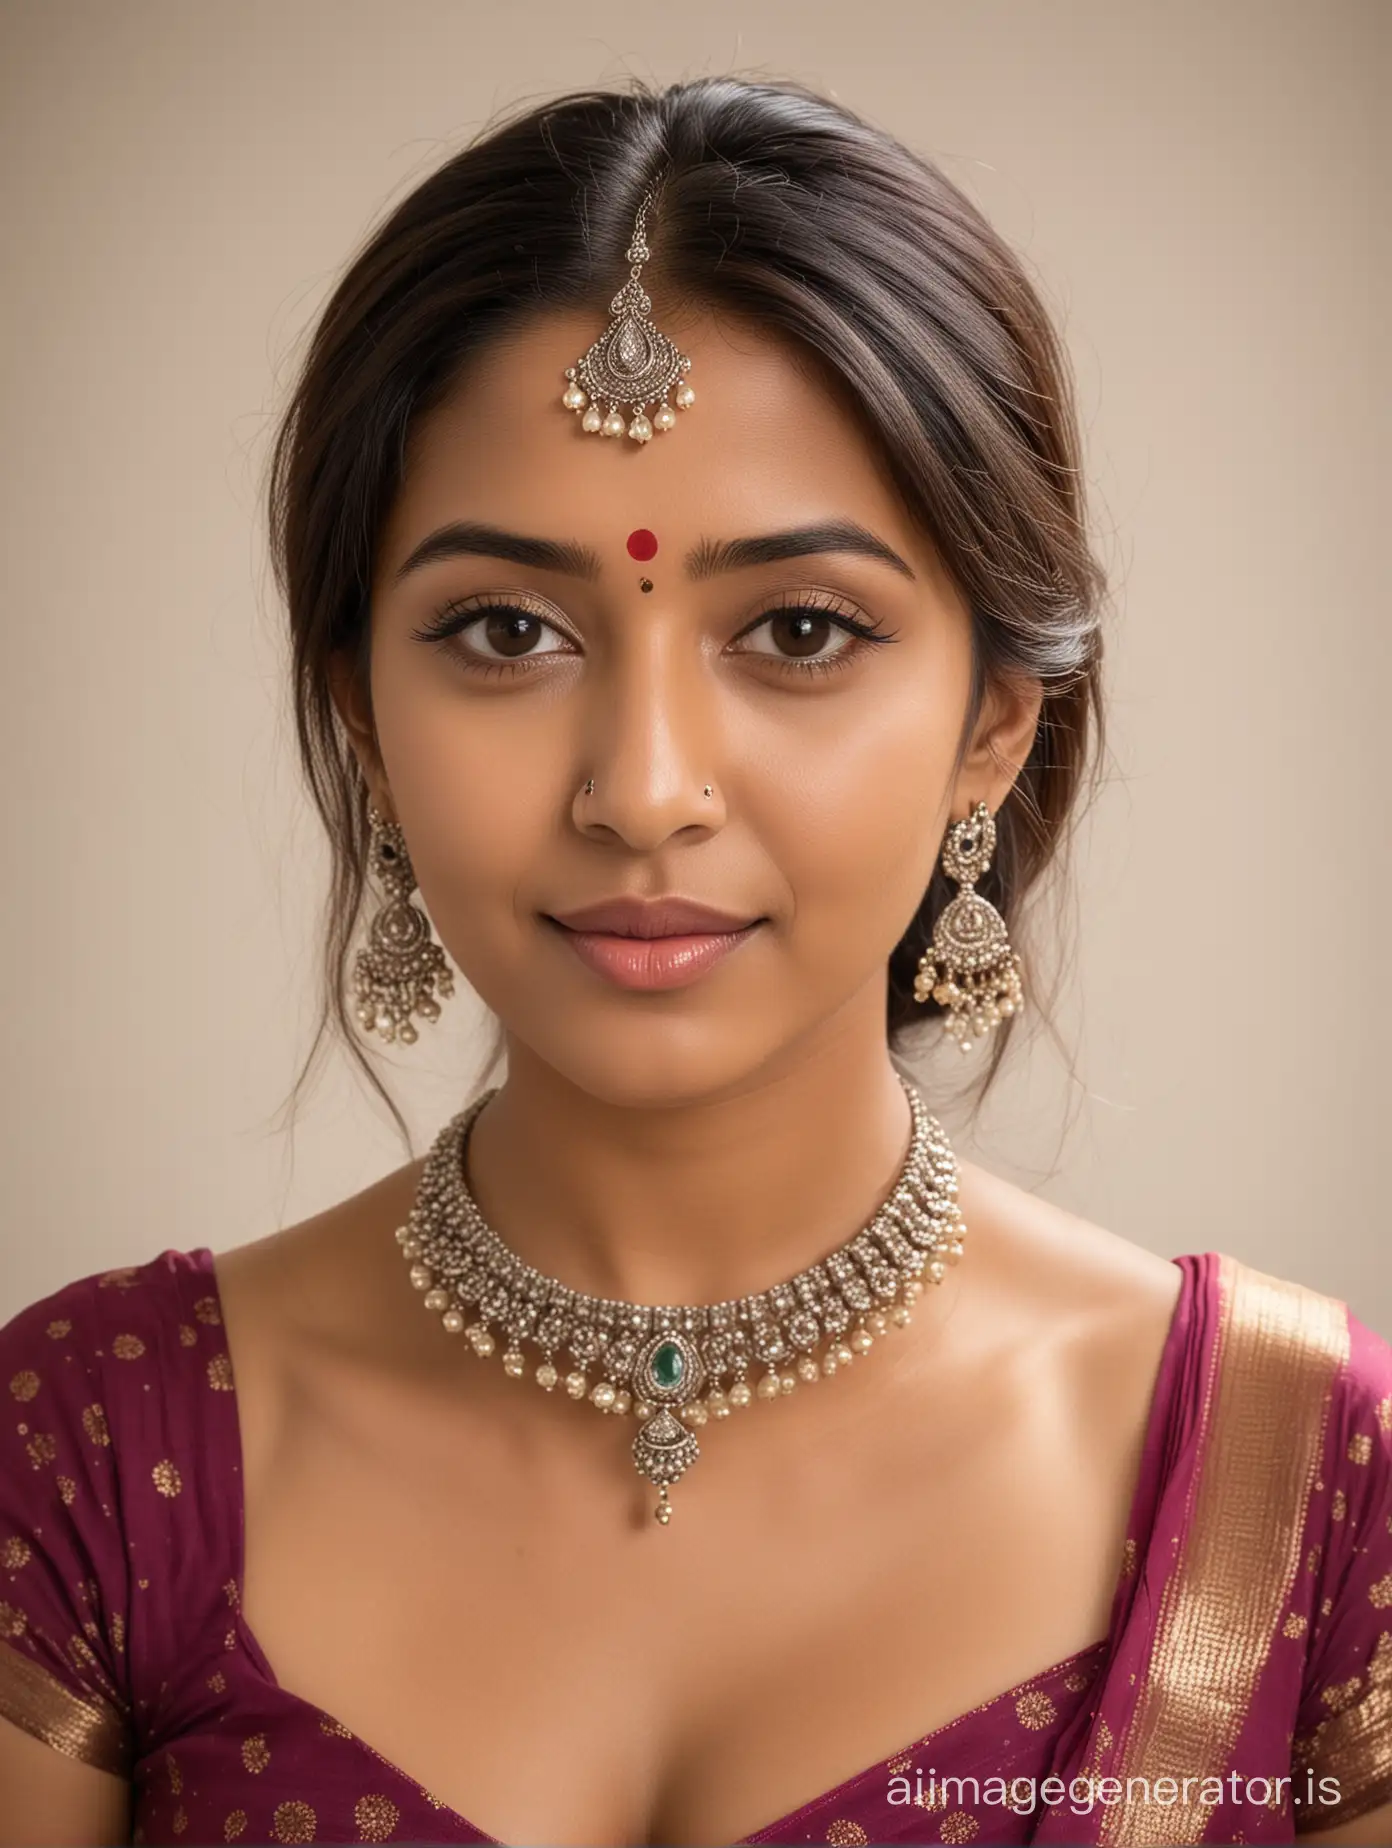 beautiful indian housewife nude with bindi and jewellery